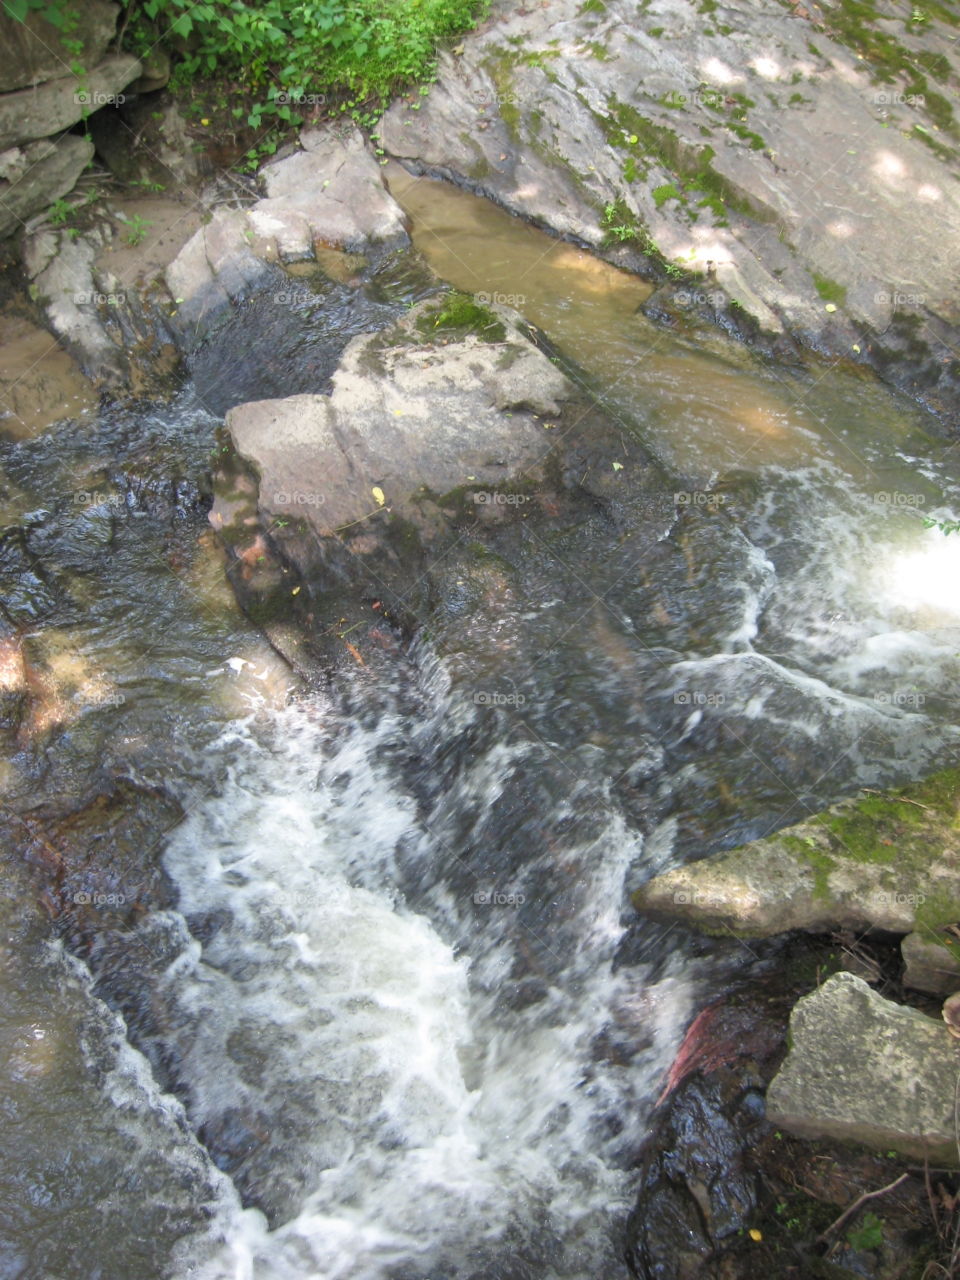 Water, Nature, Stream, River, Waterfall